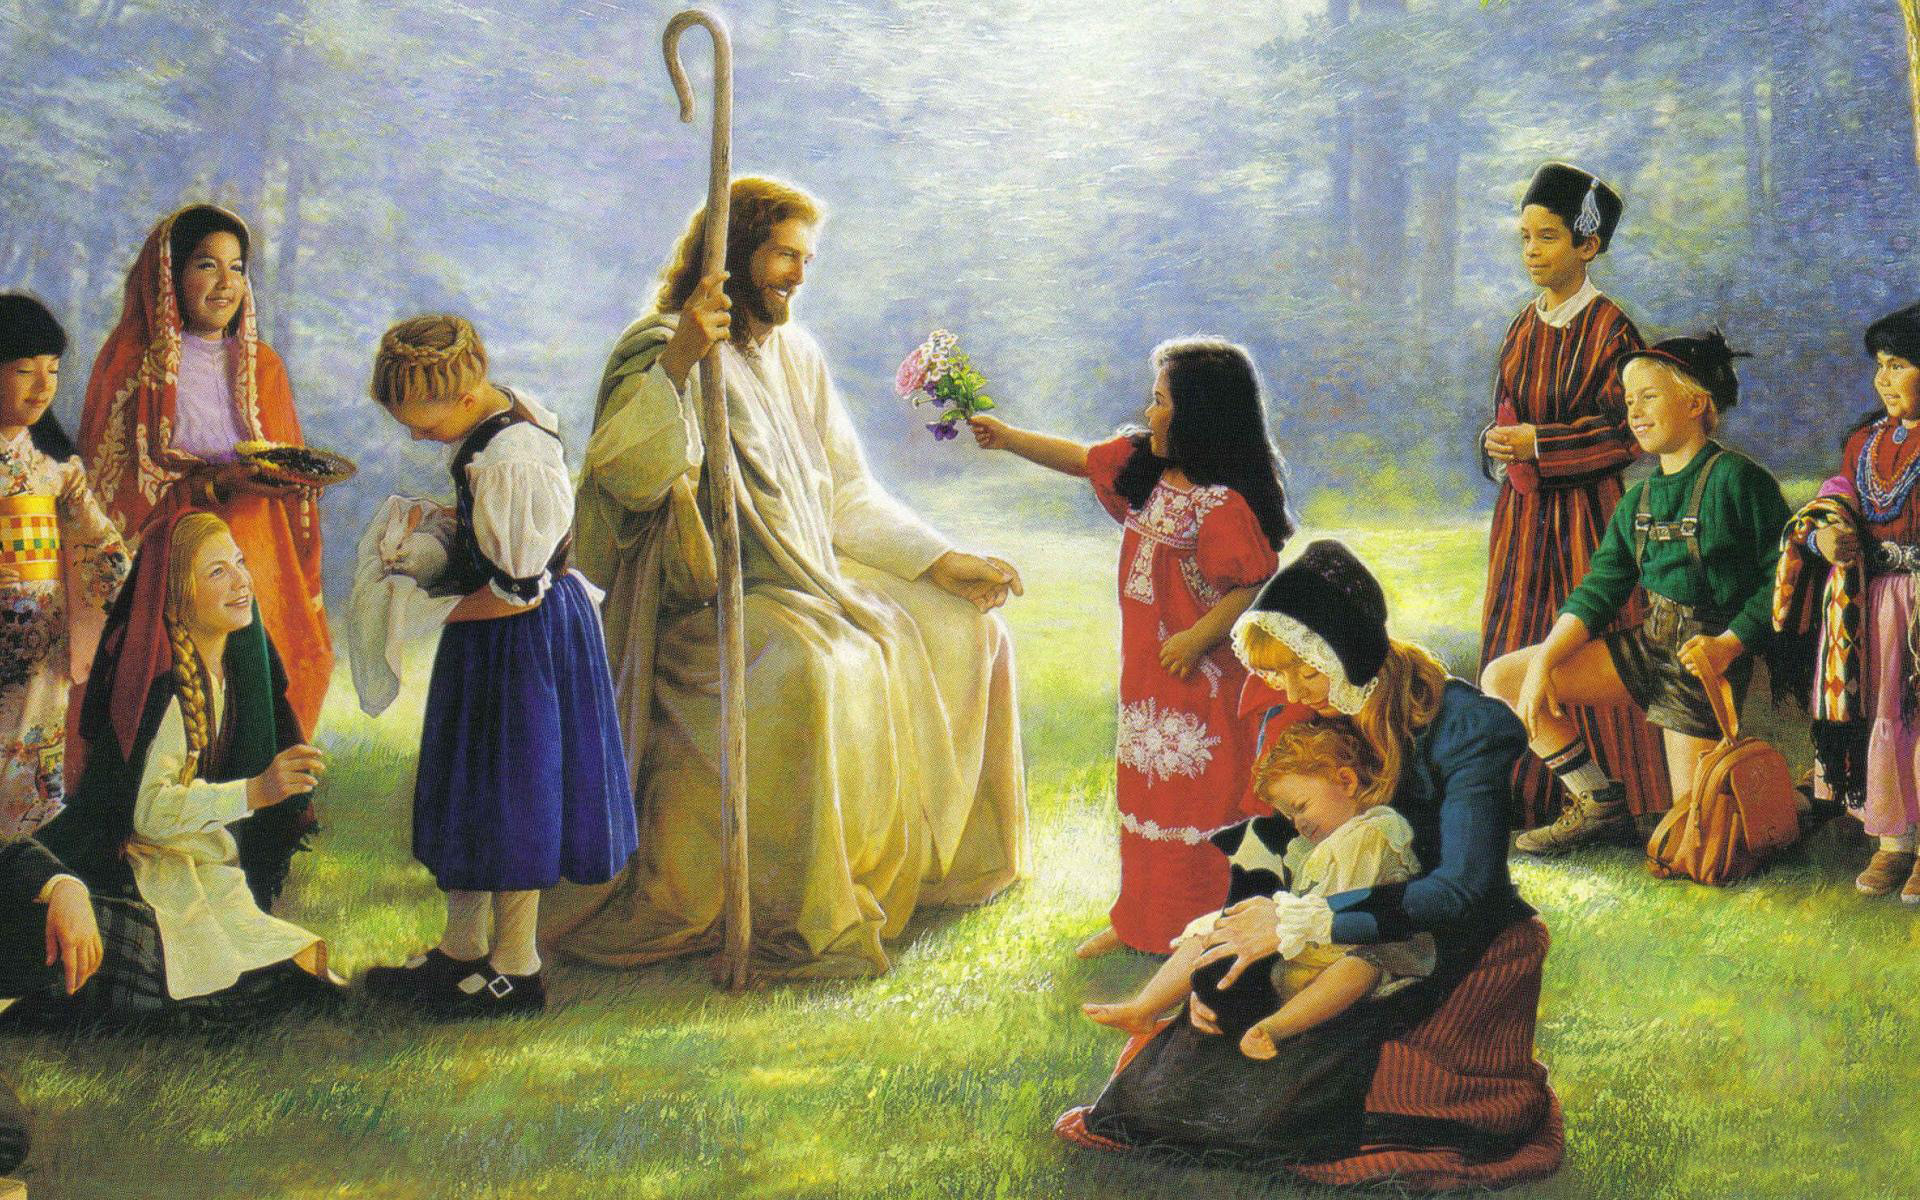 Wallpaper Of Jesus Christ And Children Puter Desktop